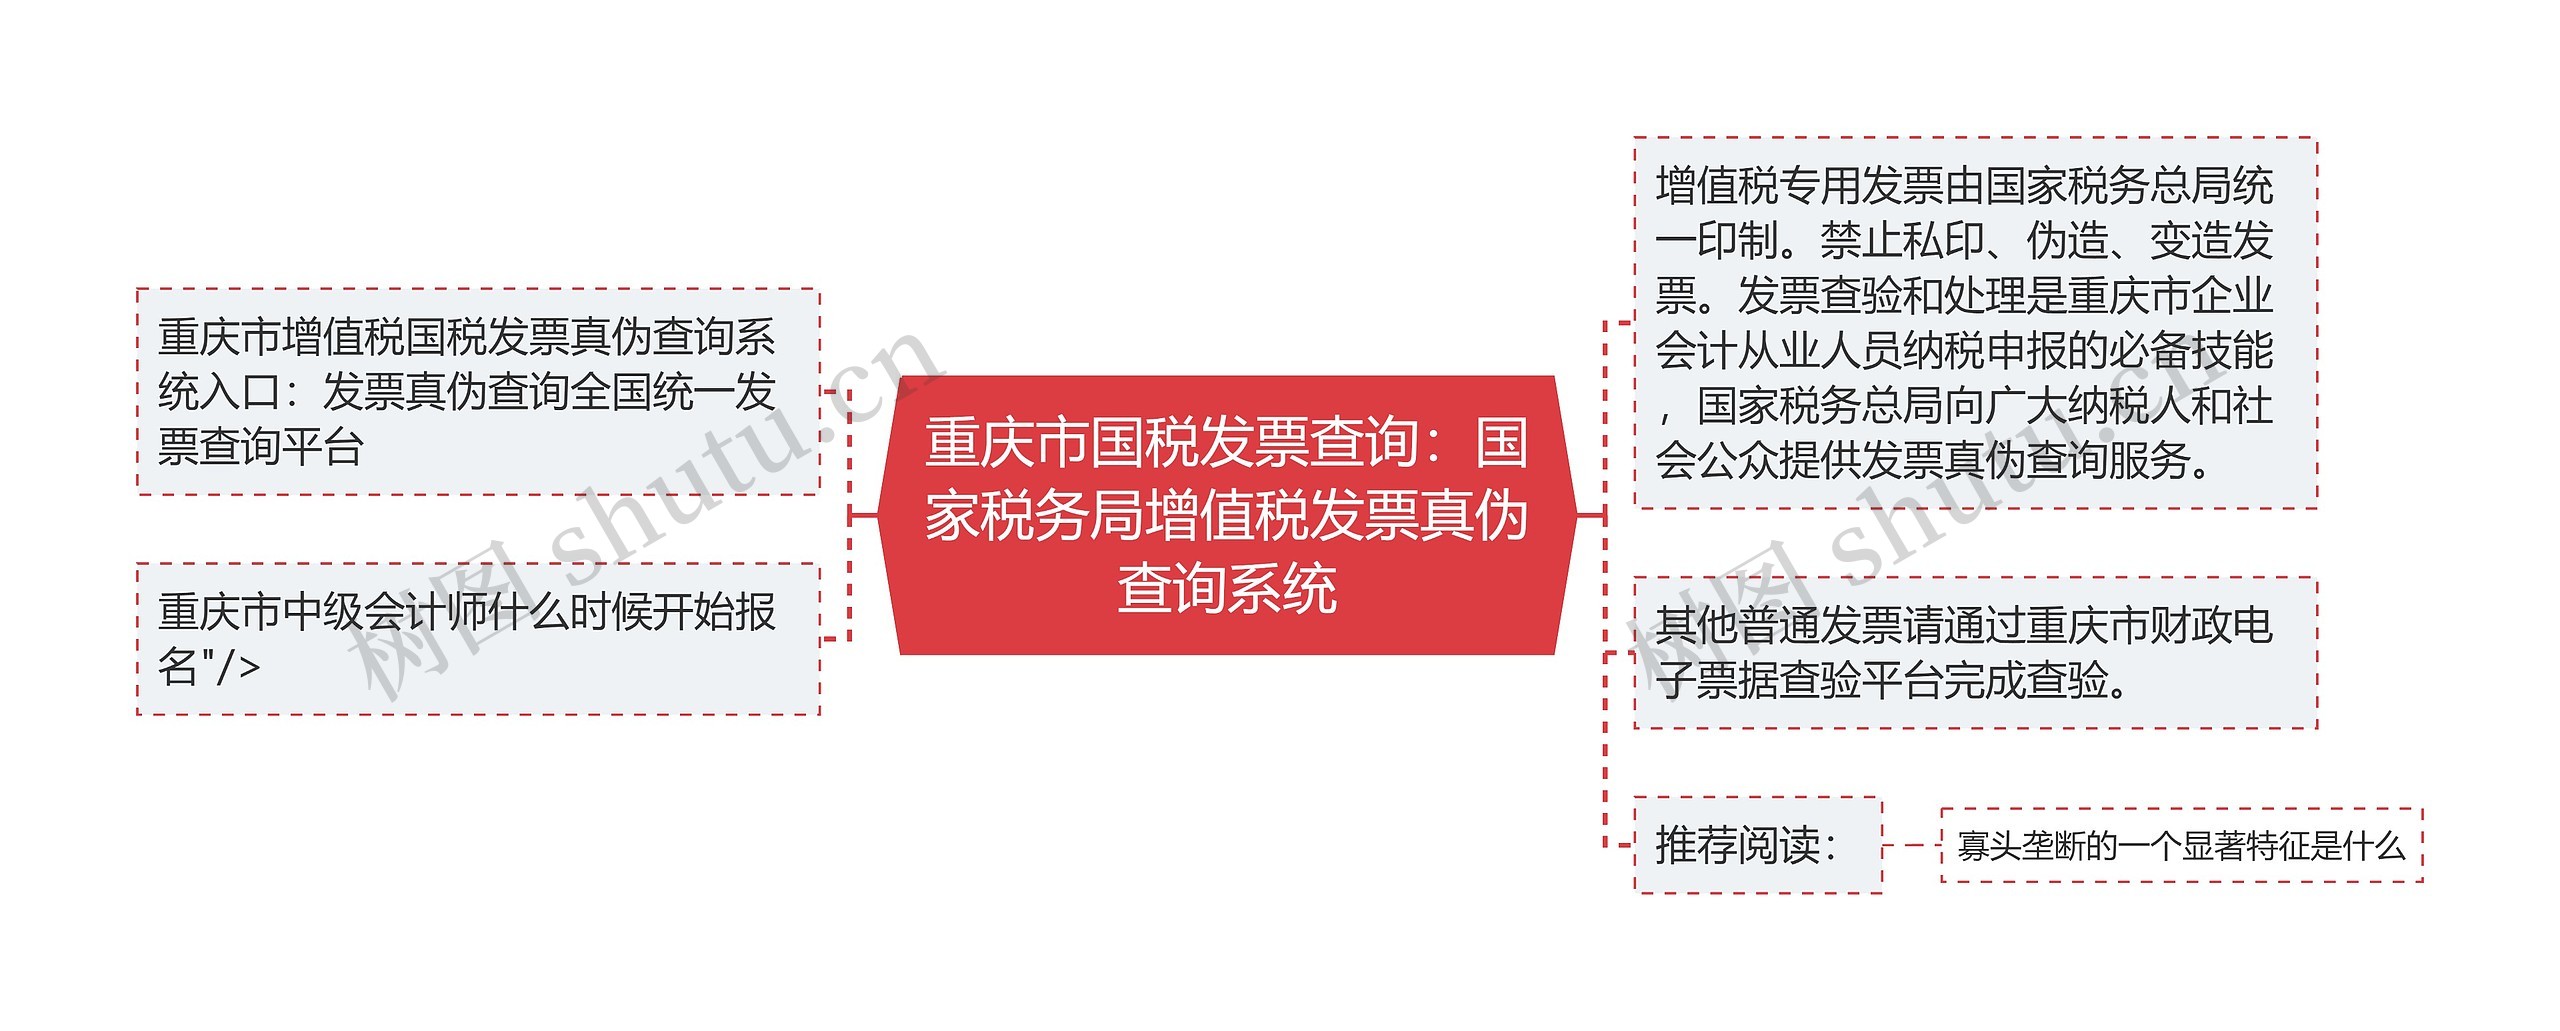 重庆市国税发票查询：国家税务局增值税发票真伪查询系统